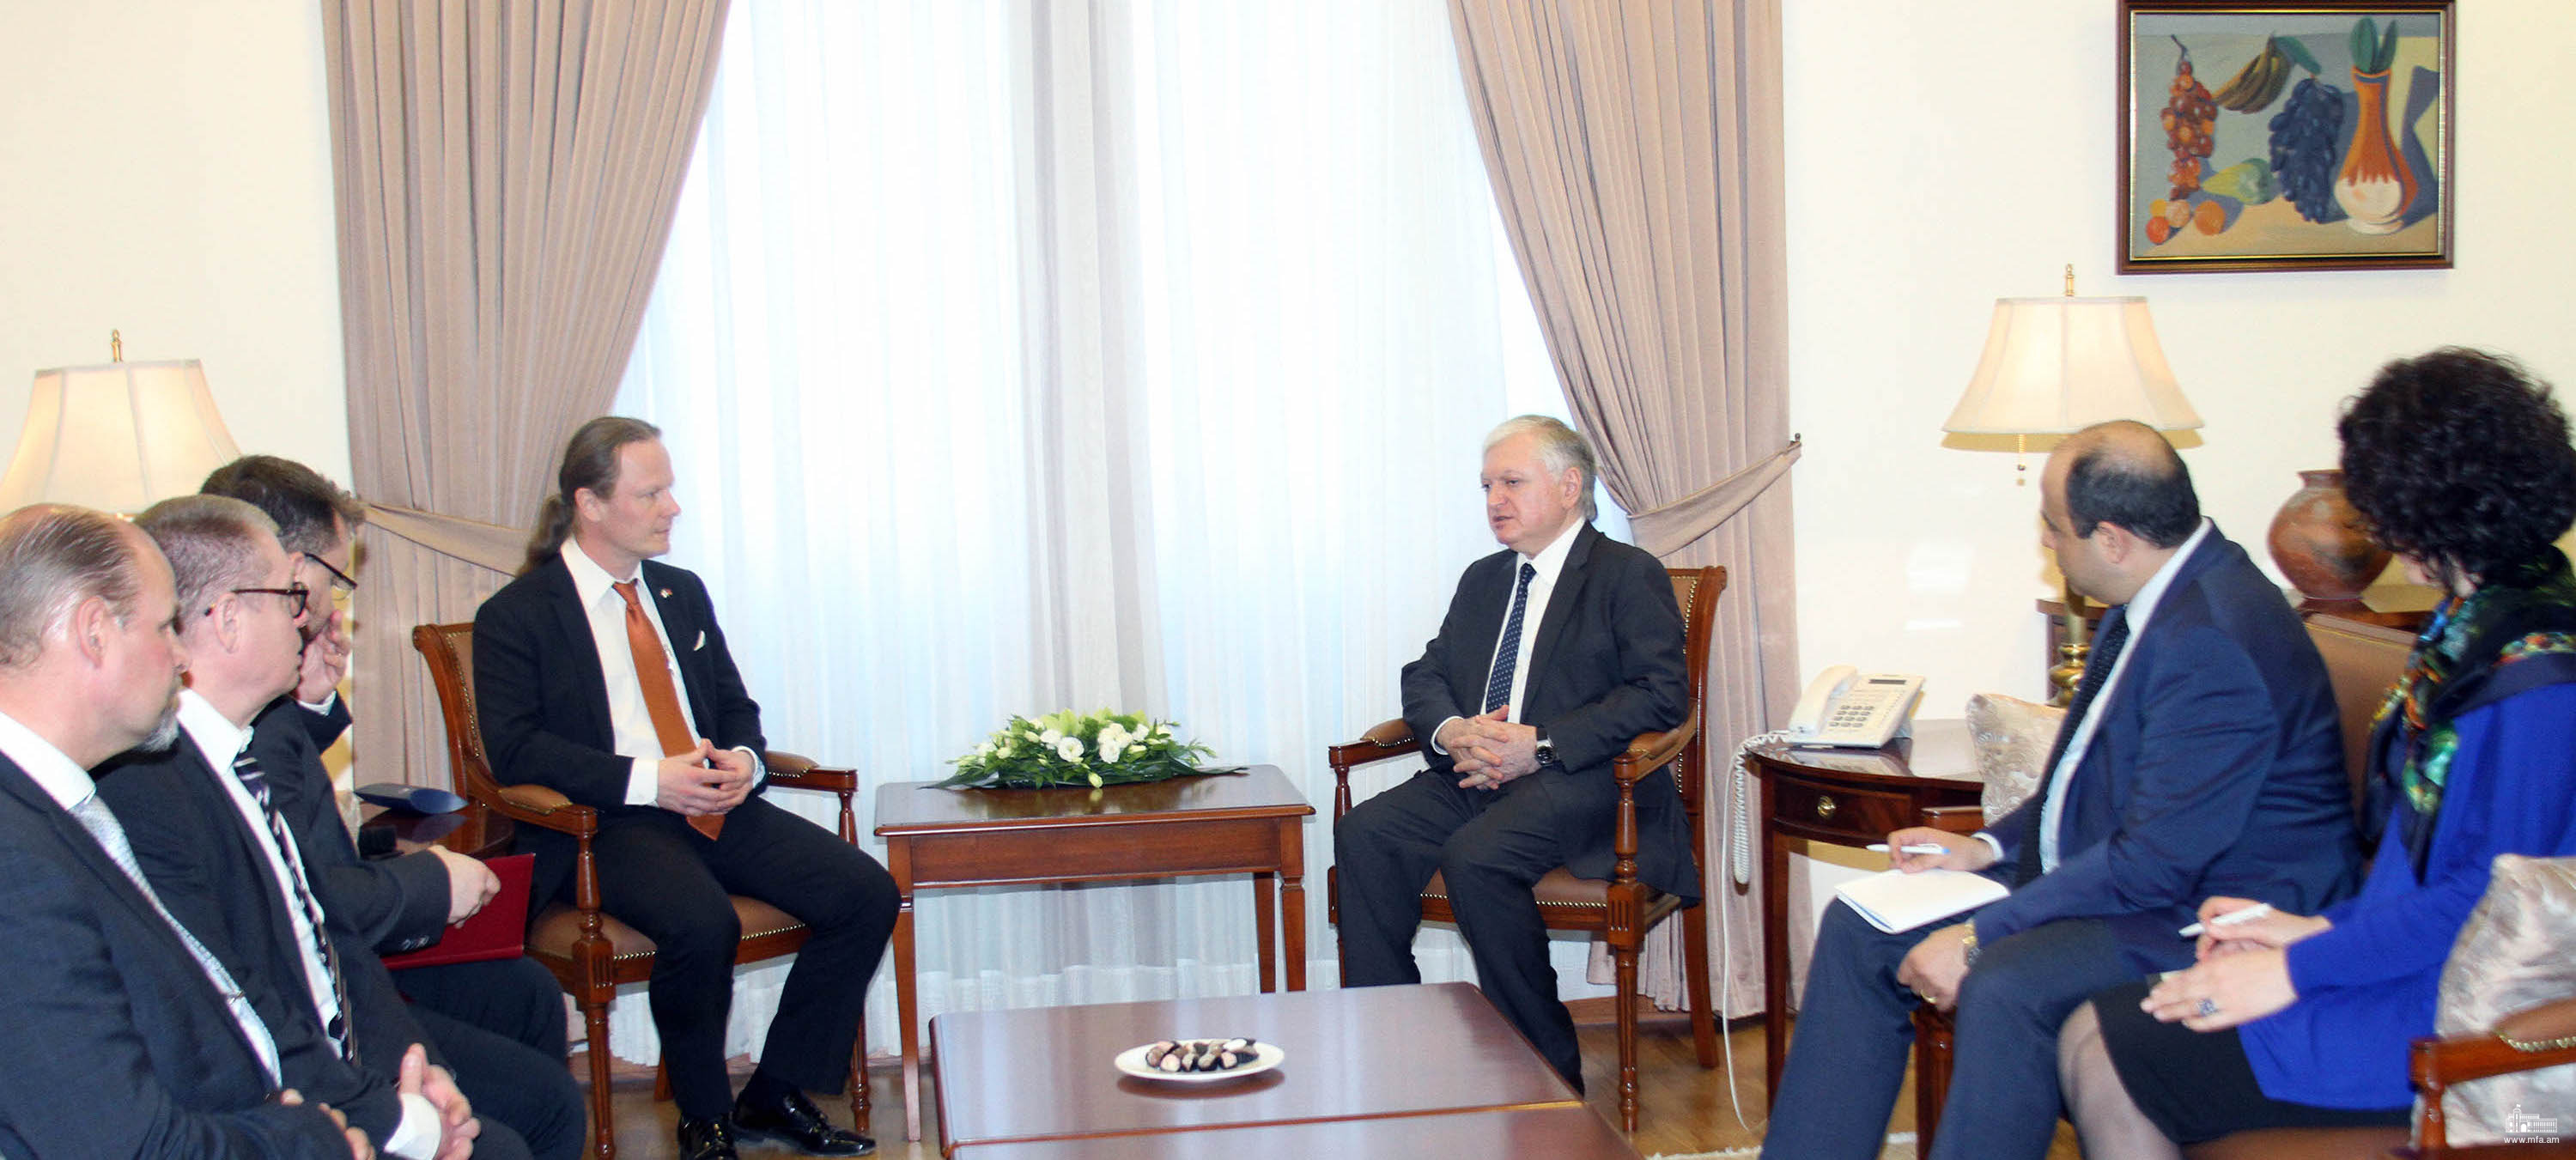 Le Ministre des Affaires étrangères d’Arménie a reçu la délégation parlementaire de Finlande